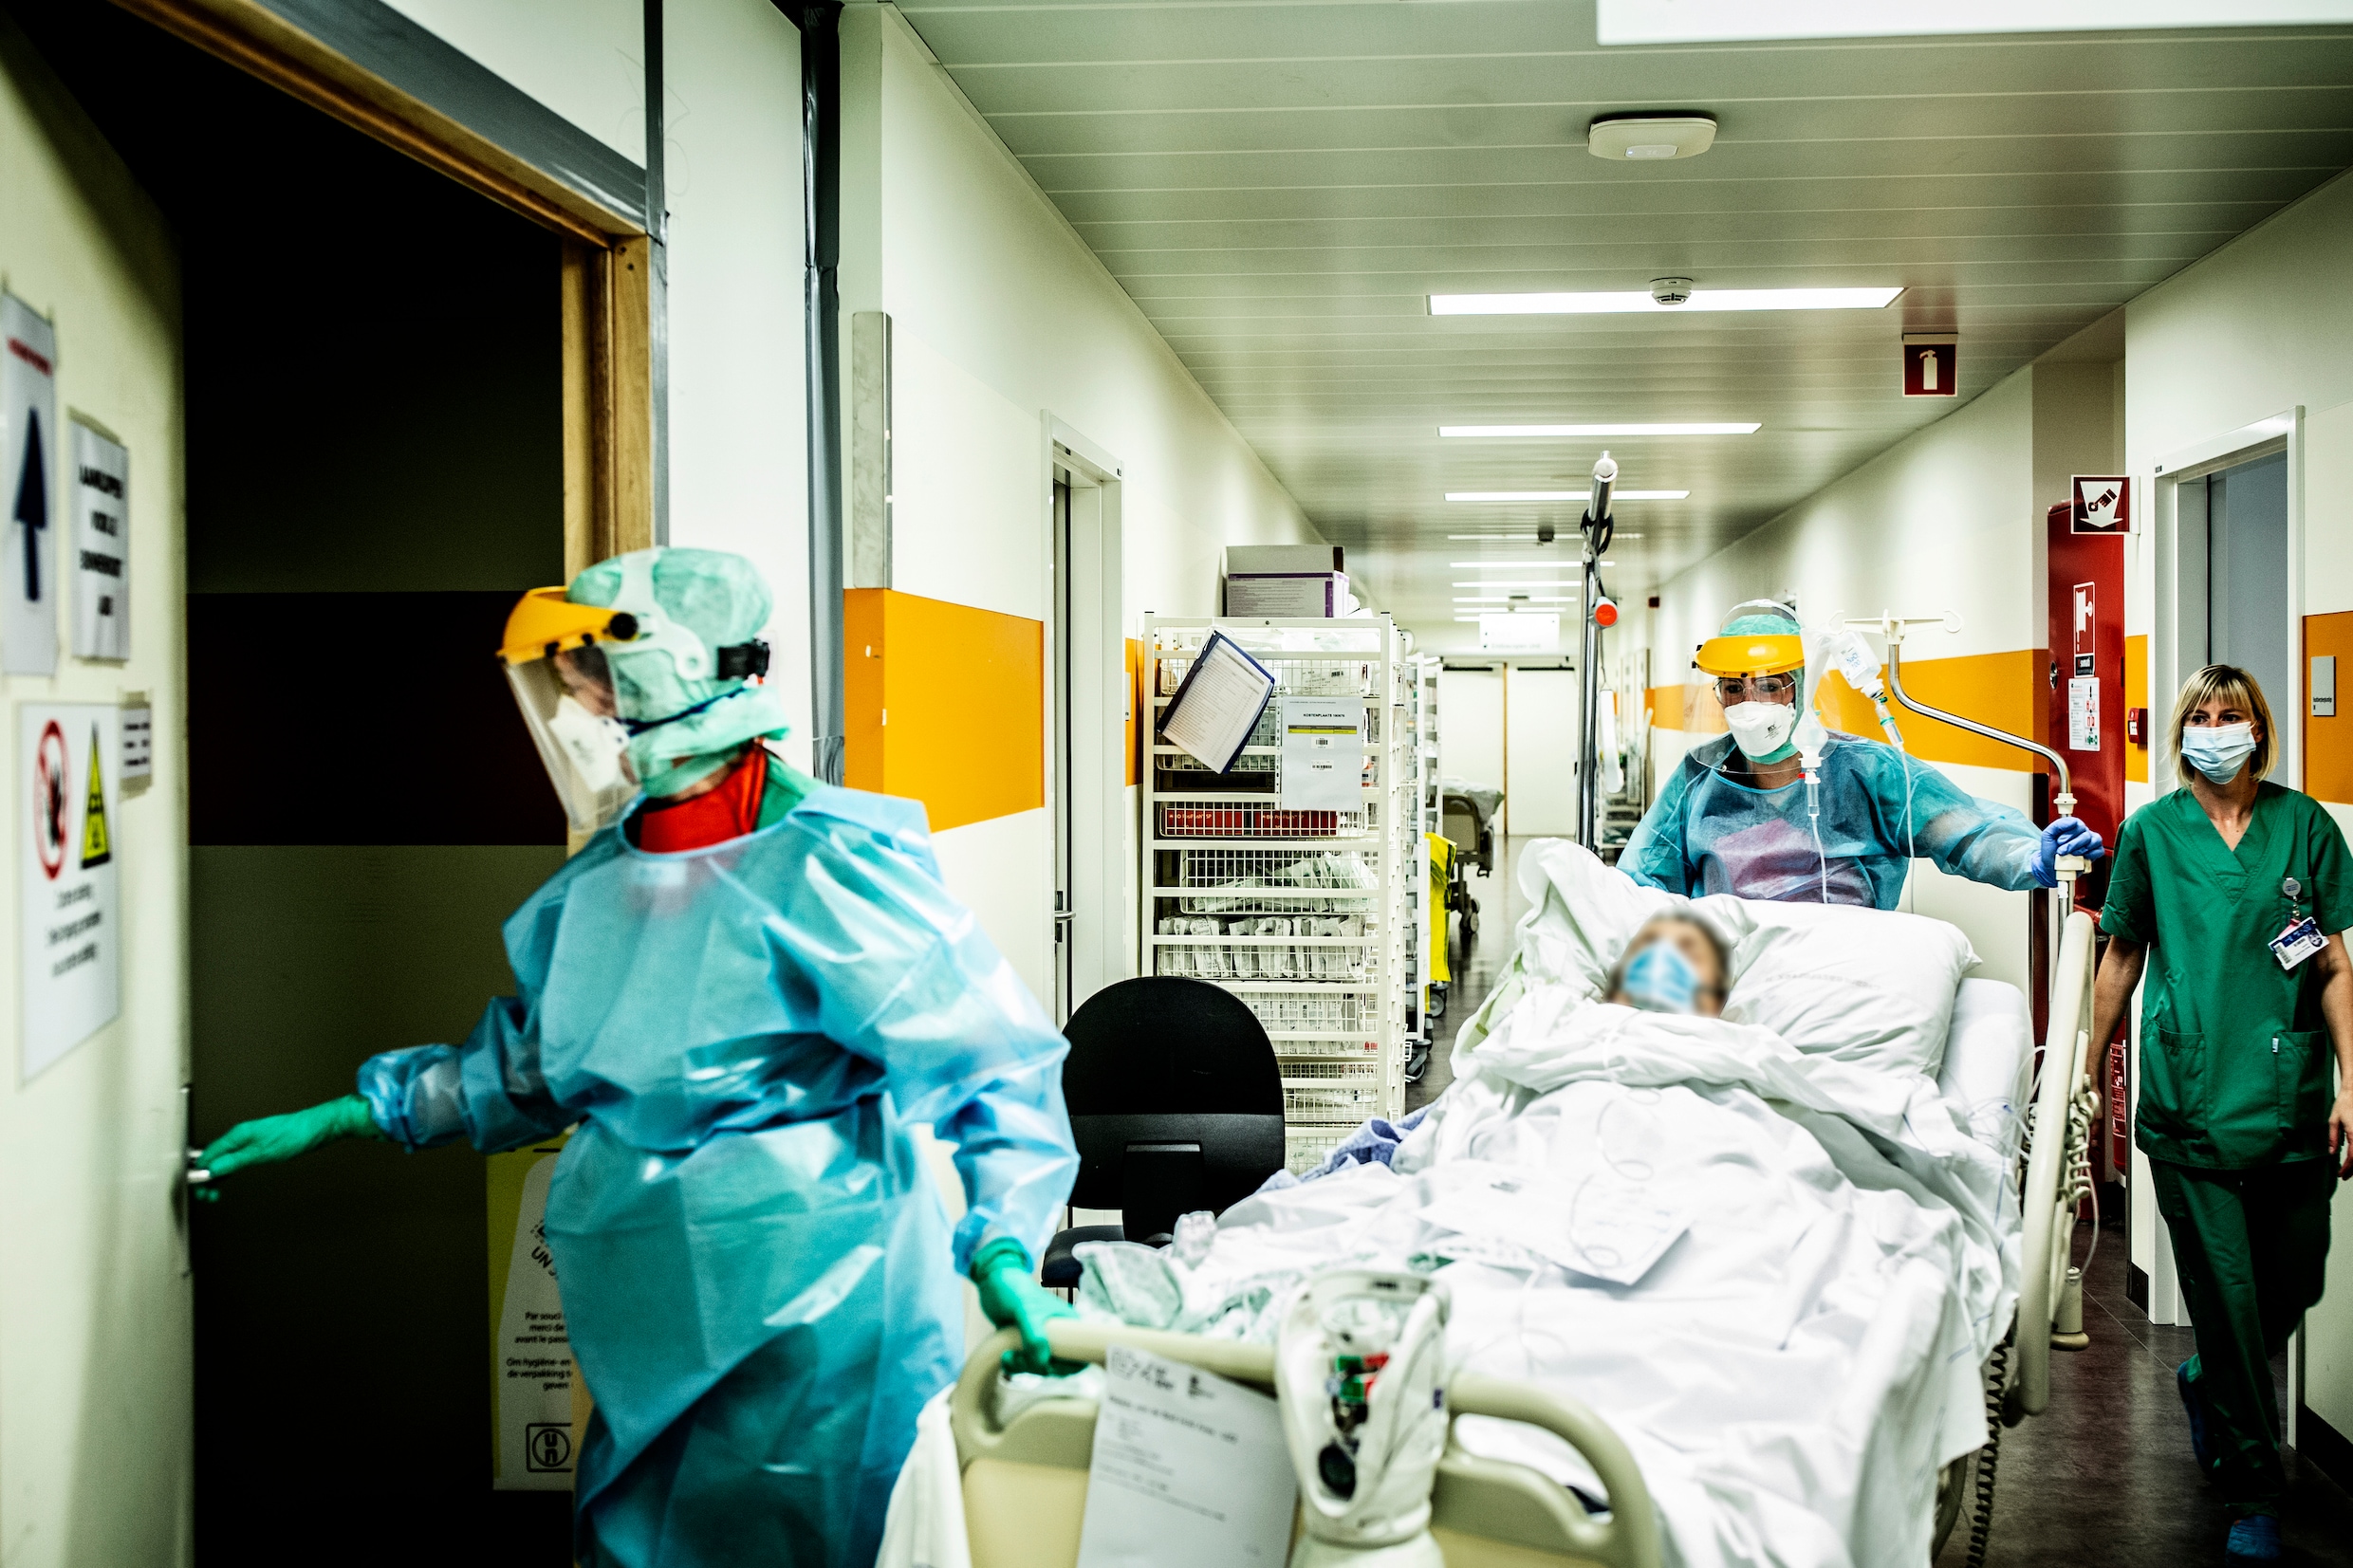 Opschaling ziekenhuiscapaciteit coronapatiënten uitgesteld: ‘Voorlopig niet aan de orde’